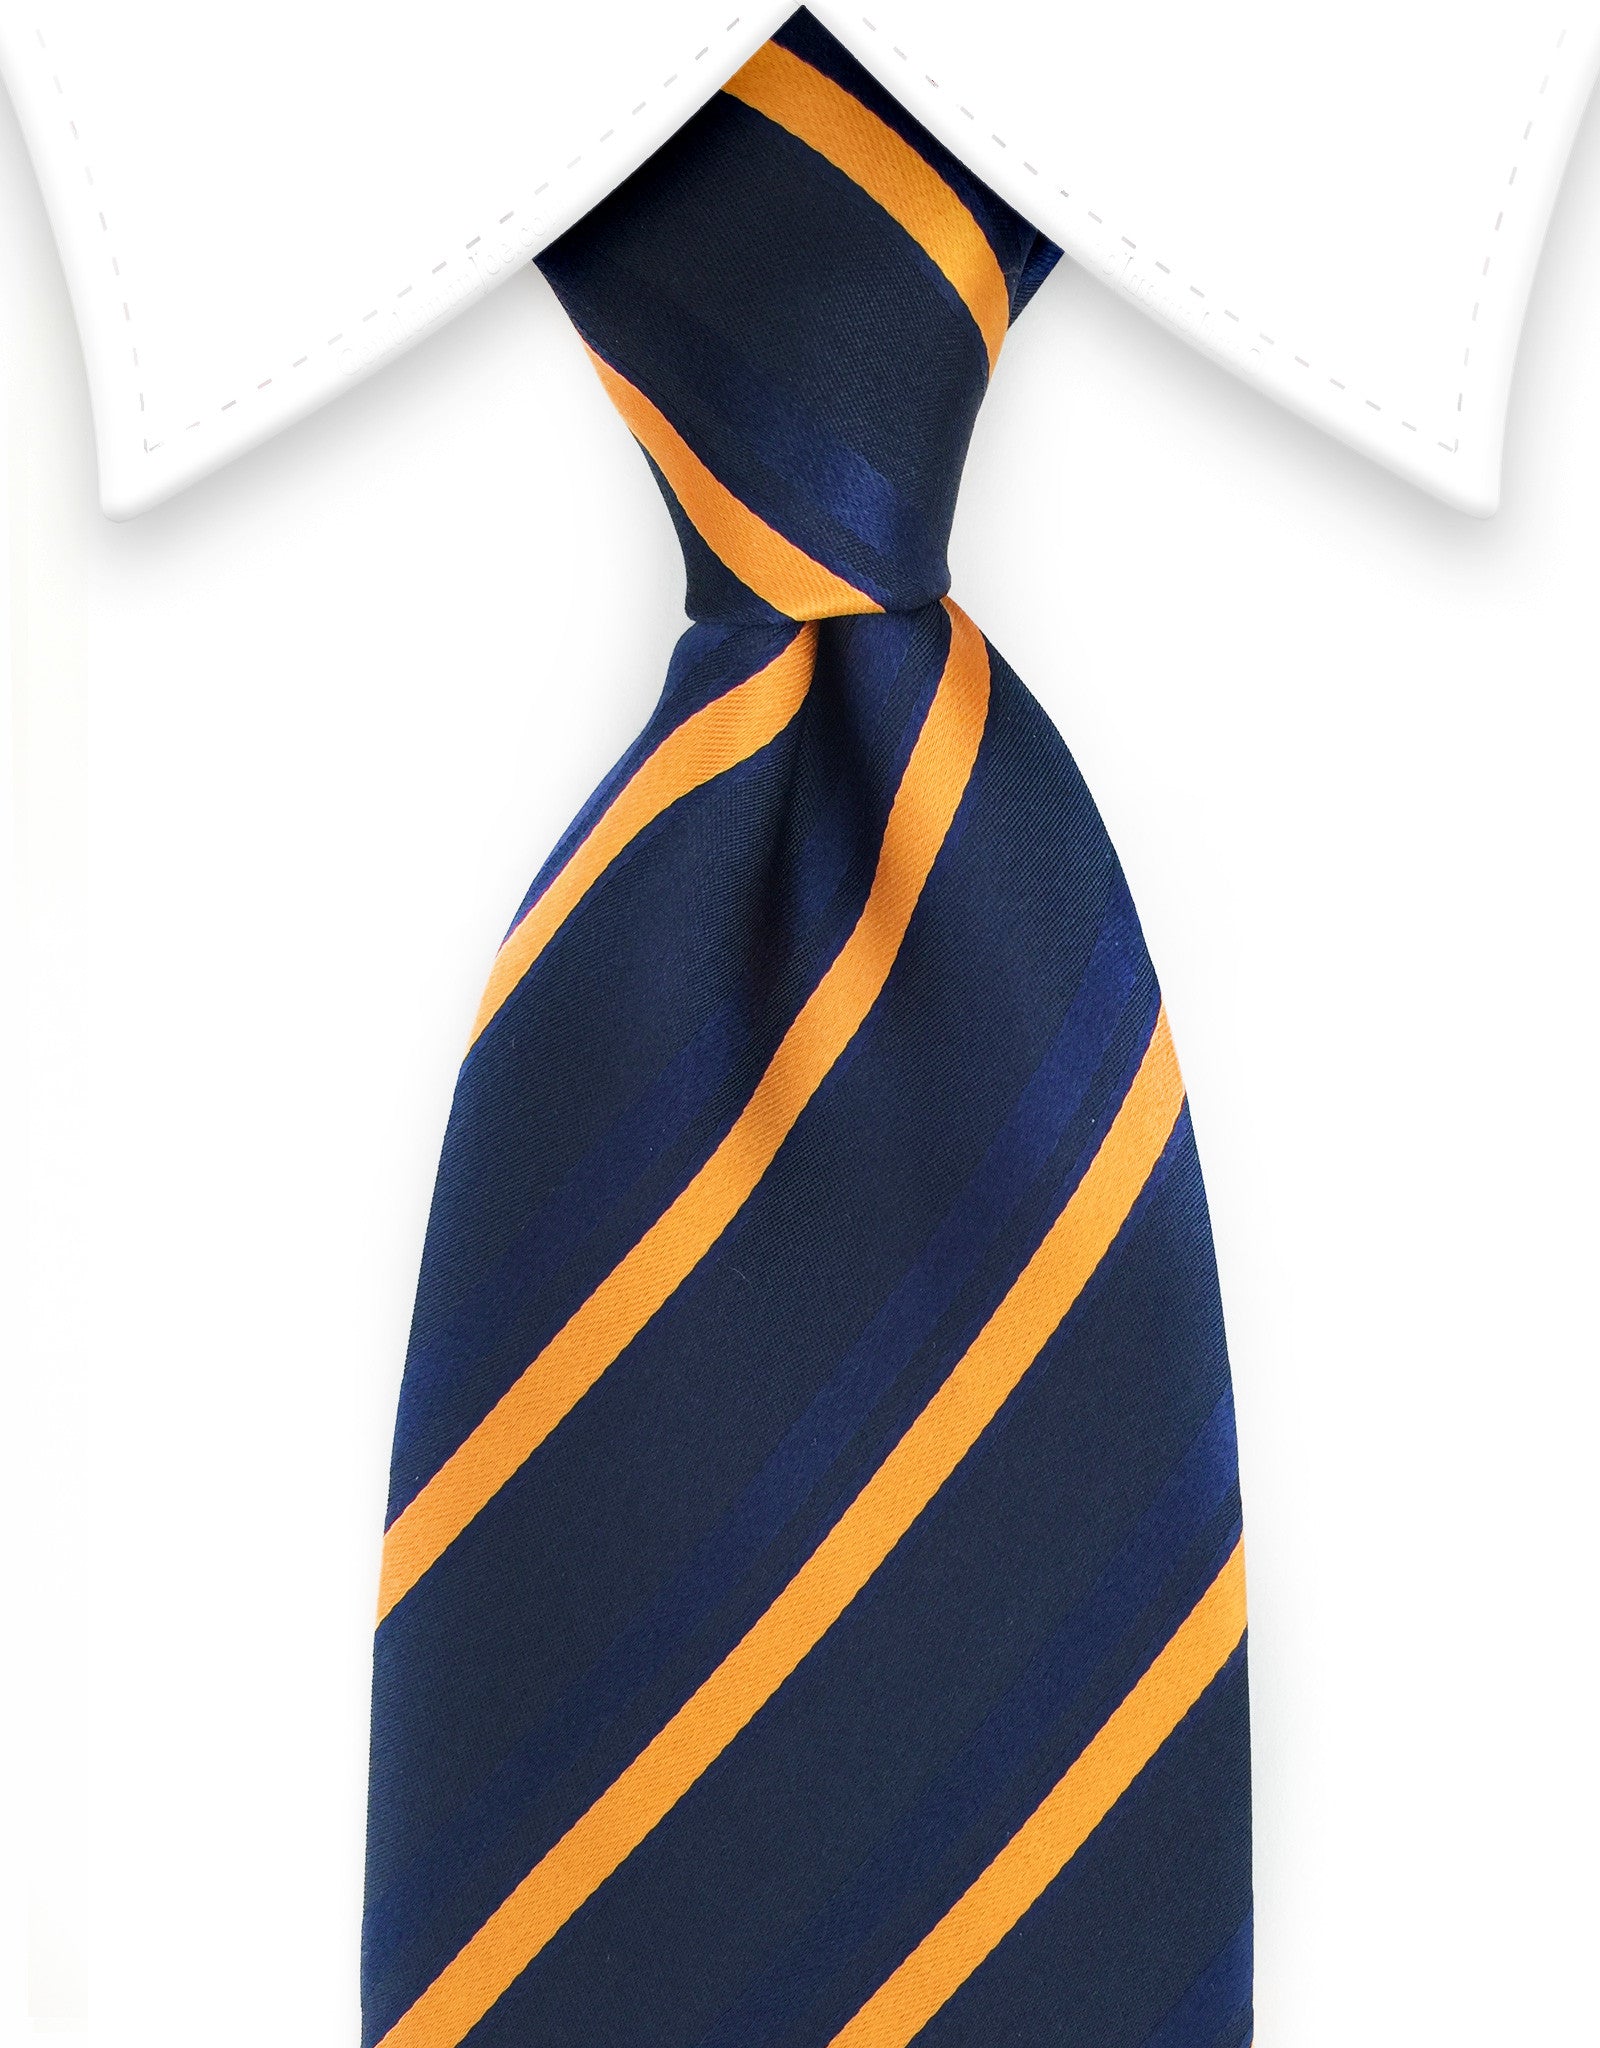 Navy blue and orange striped tie